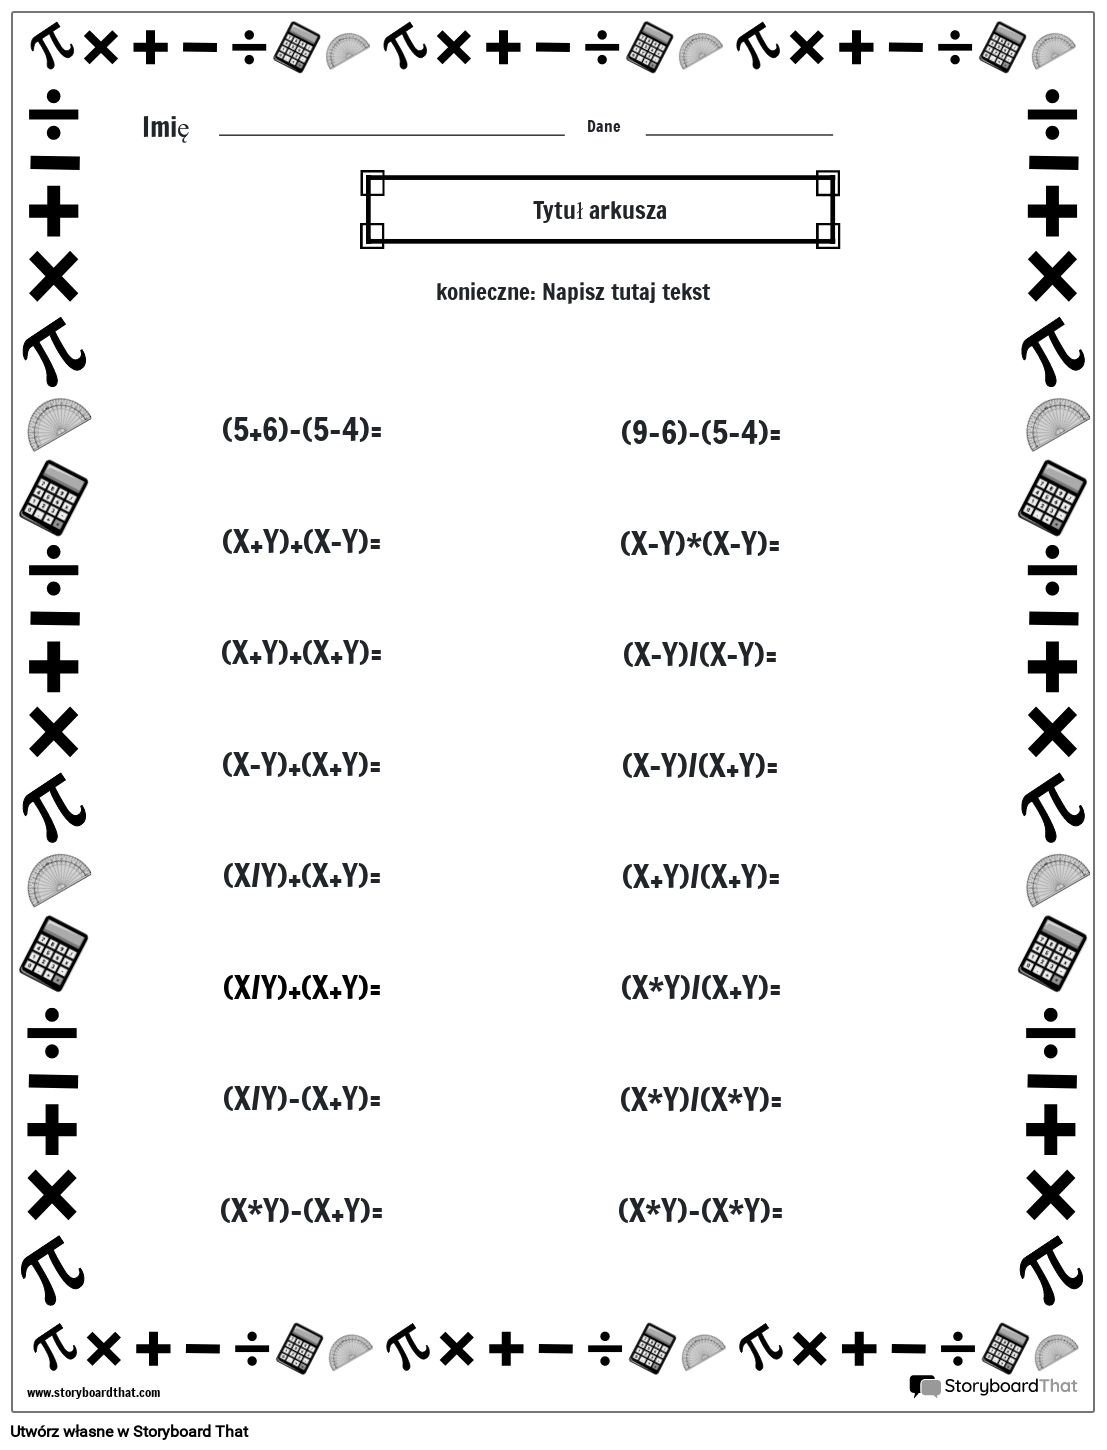 Arkusz kolejności operacji z obramowaniem matematycznym (czarno-biały)